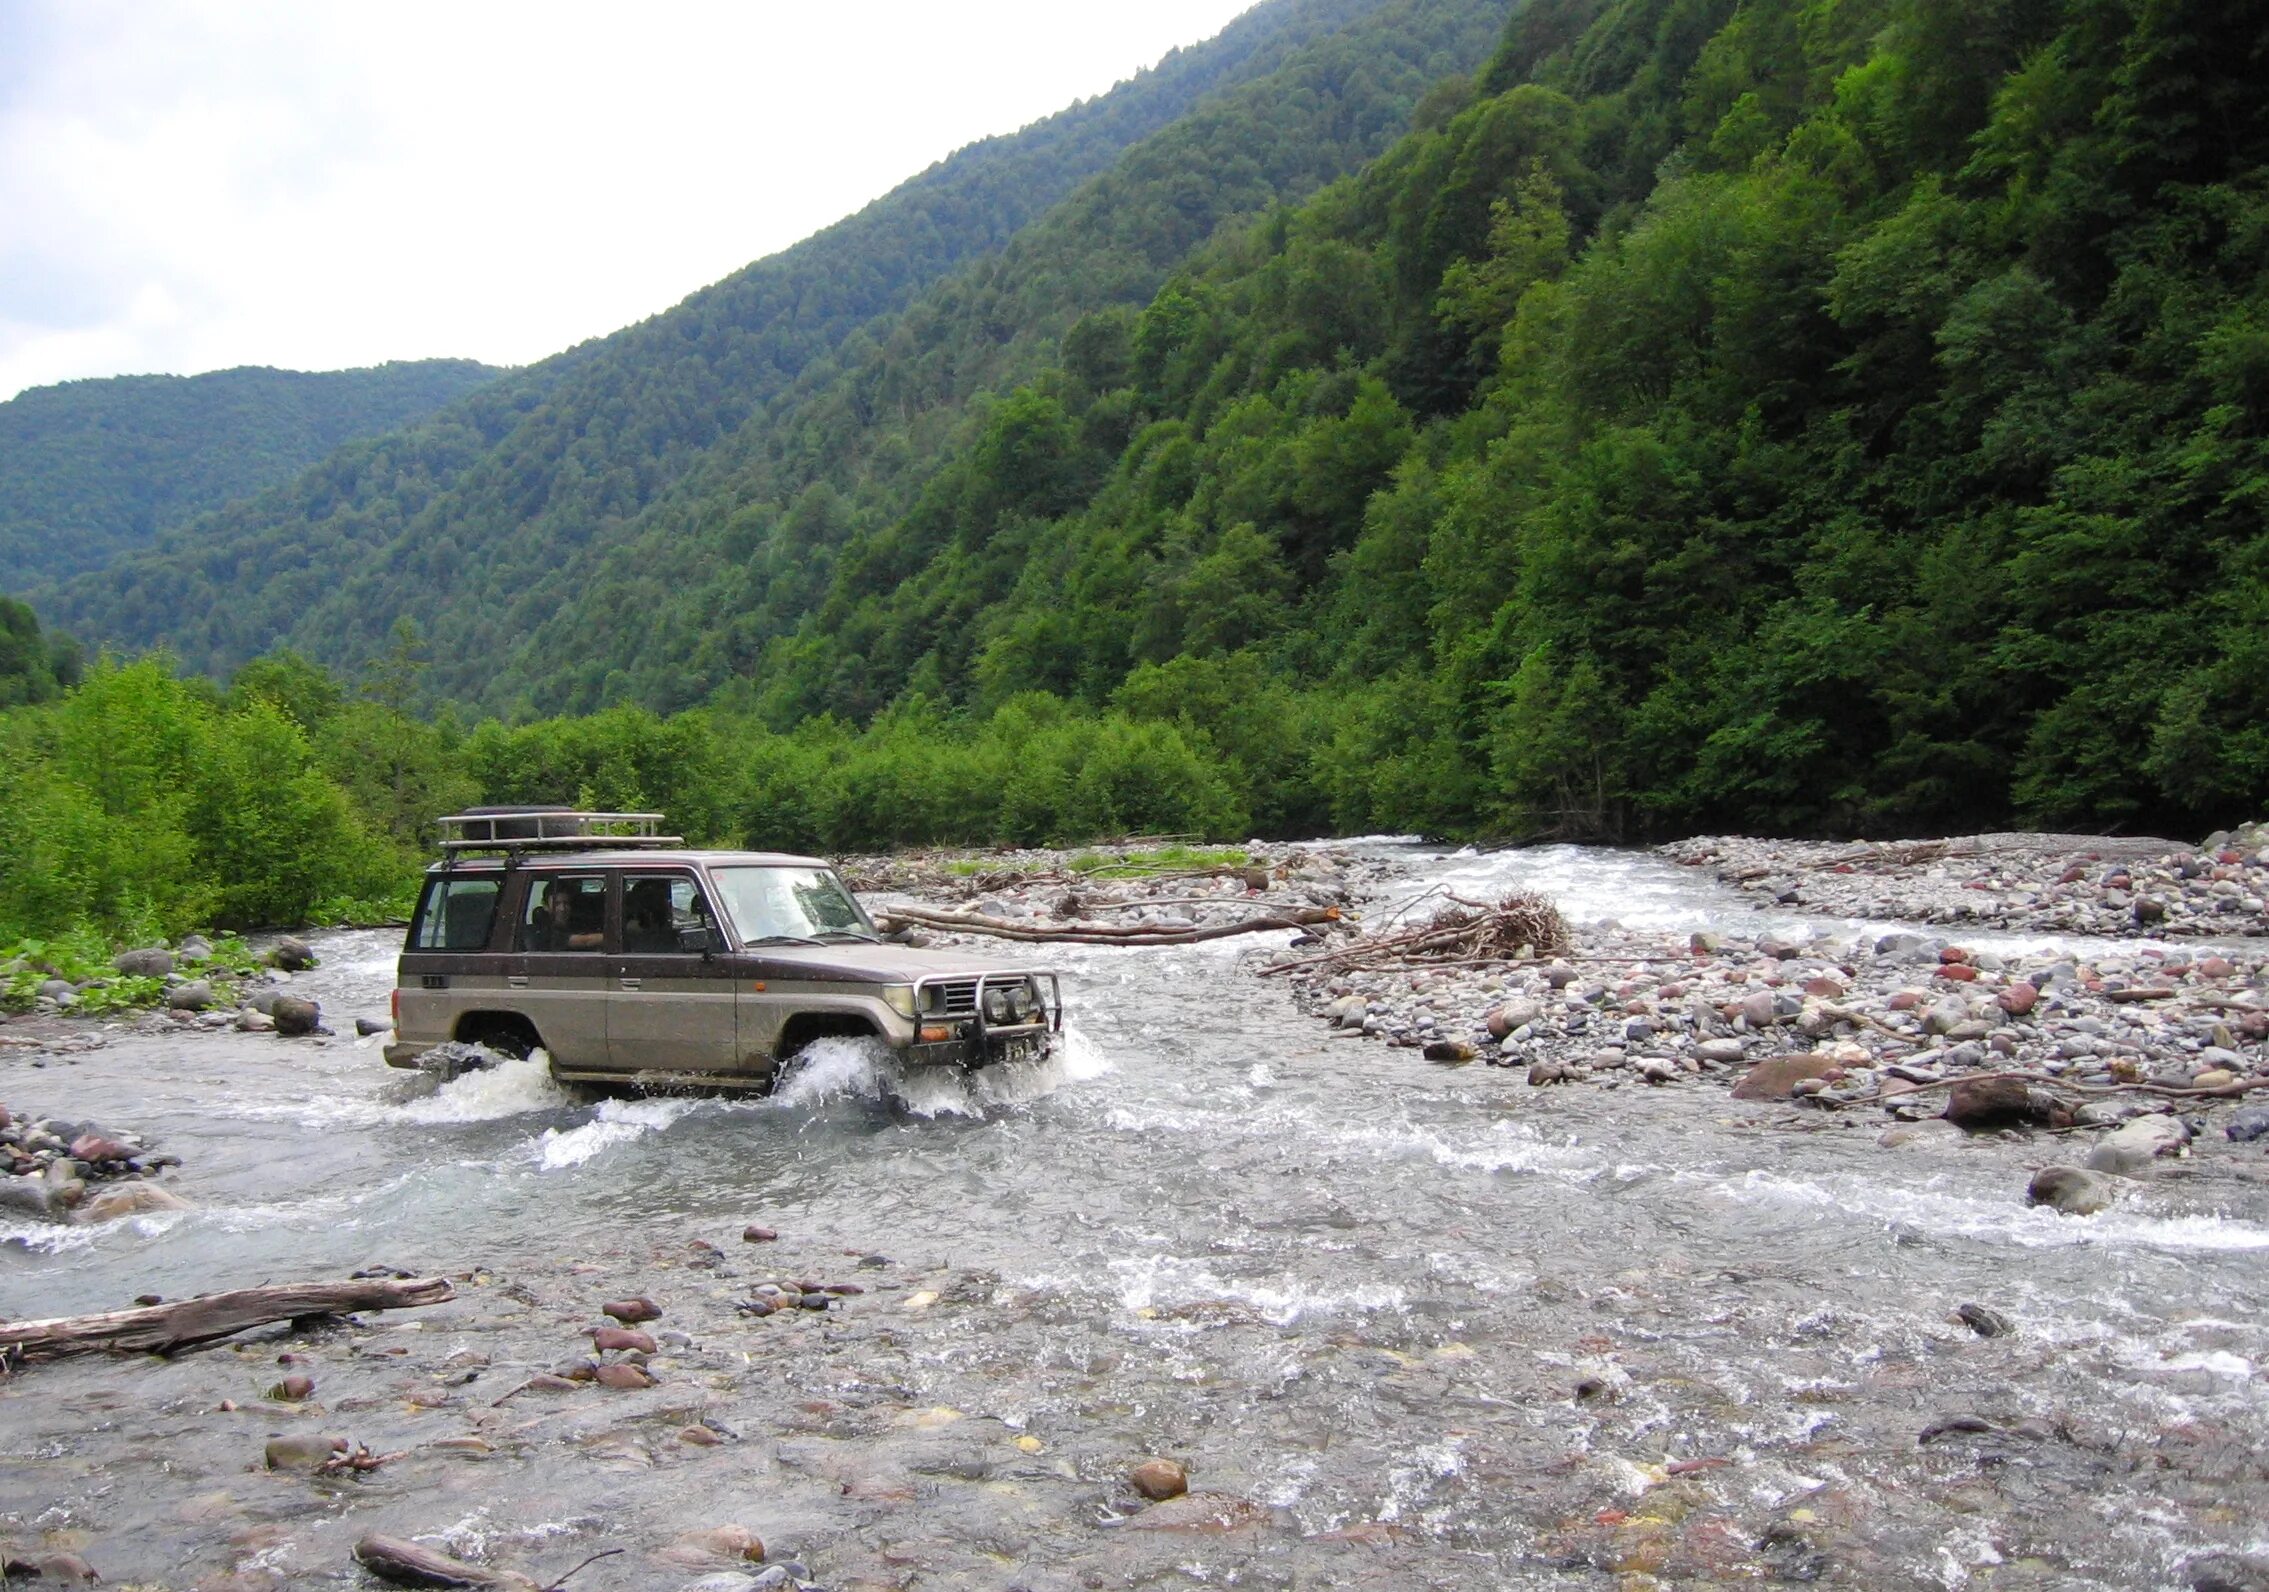 Ксани бани вскрылась. Ксанское ущелье Южная Осетия. Ксани (река). Ксани Ленингор. Река Ксани в Южной Осетии.